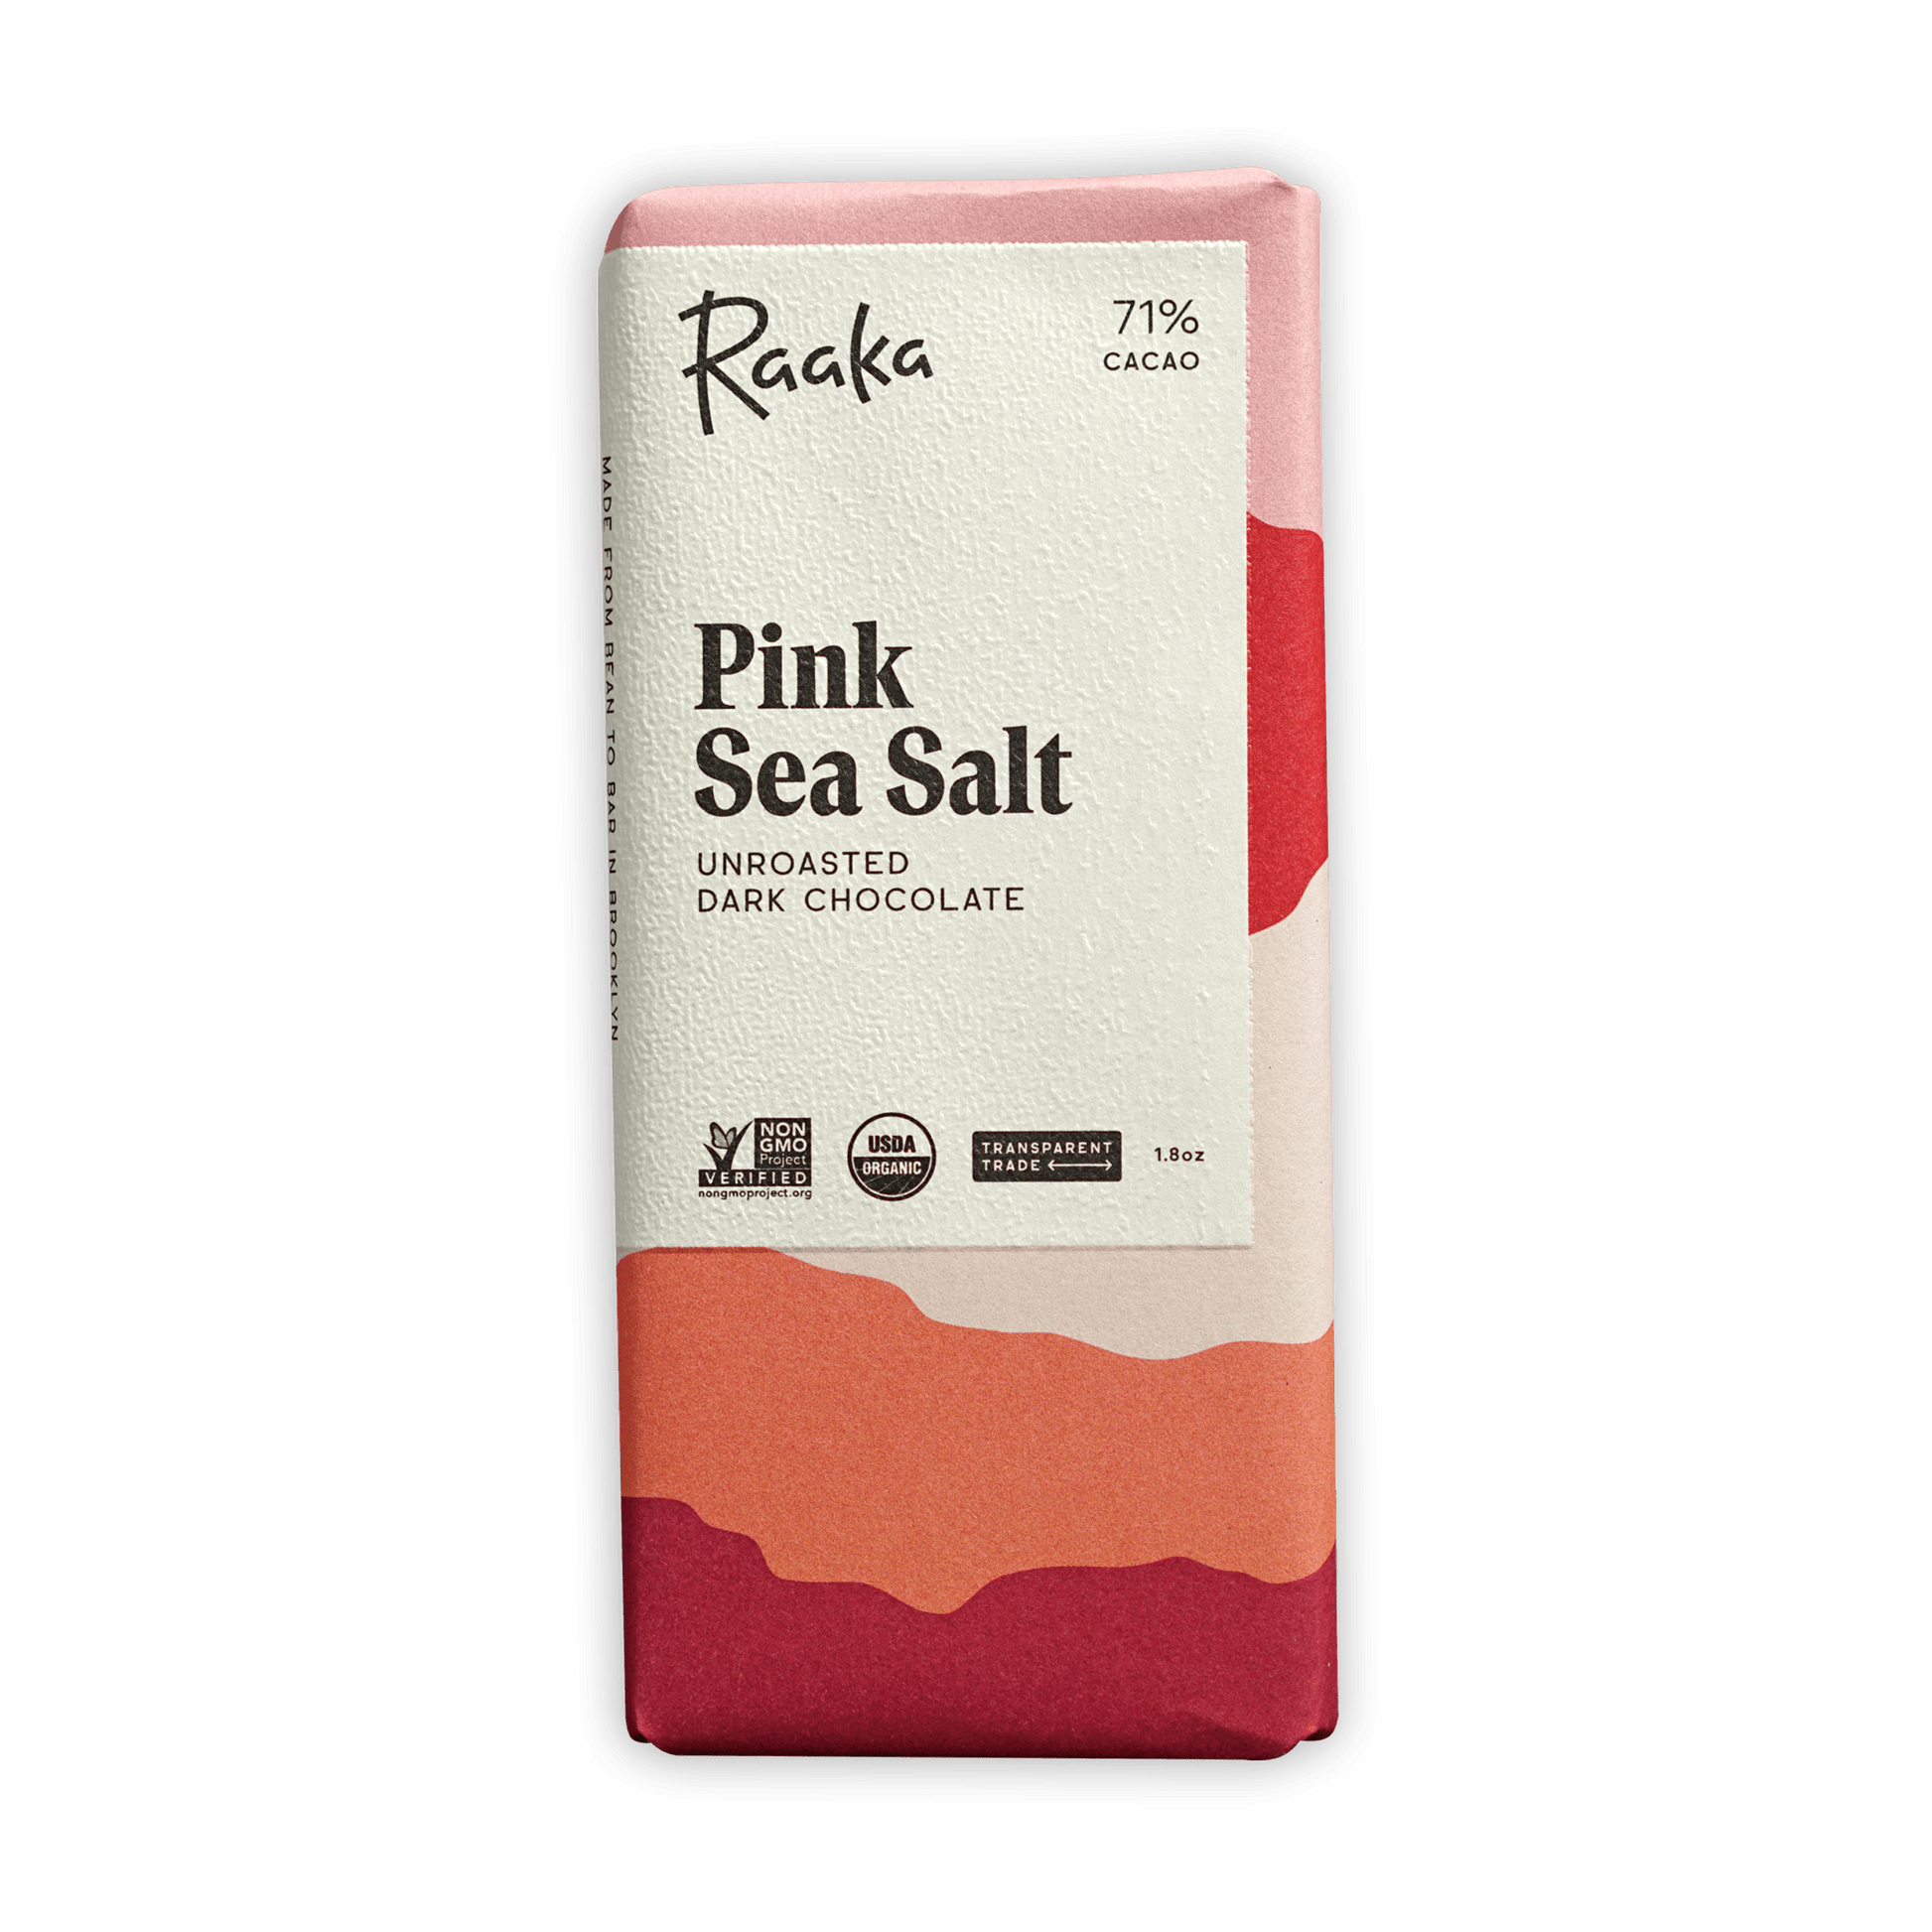 Raaka Pink Sea Salt 71%